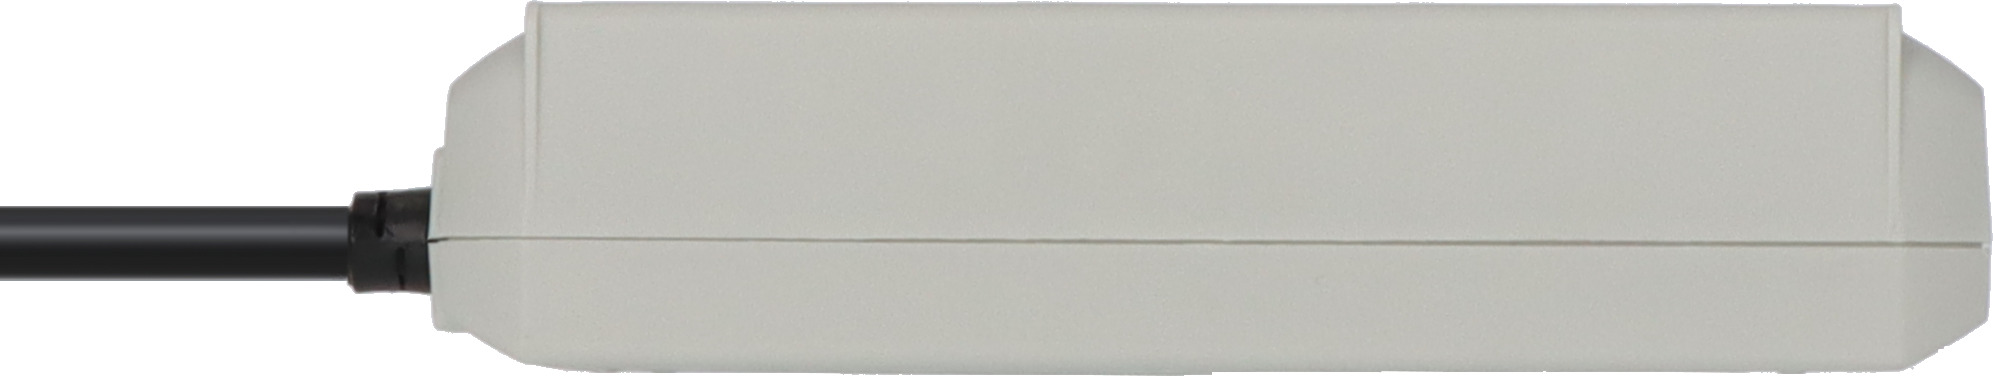 Regleta Eco-Line 3 tomas gris claro 1,5m H05VV-F 3G1,5